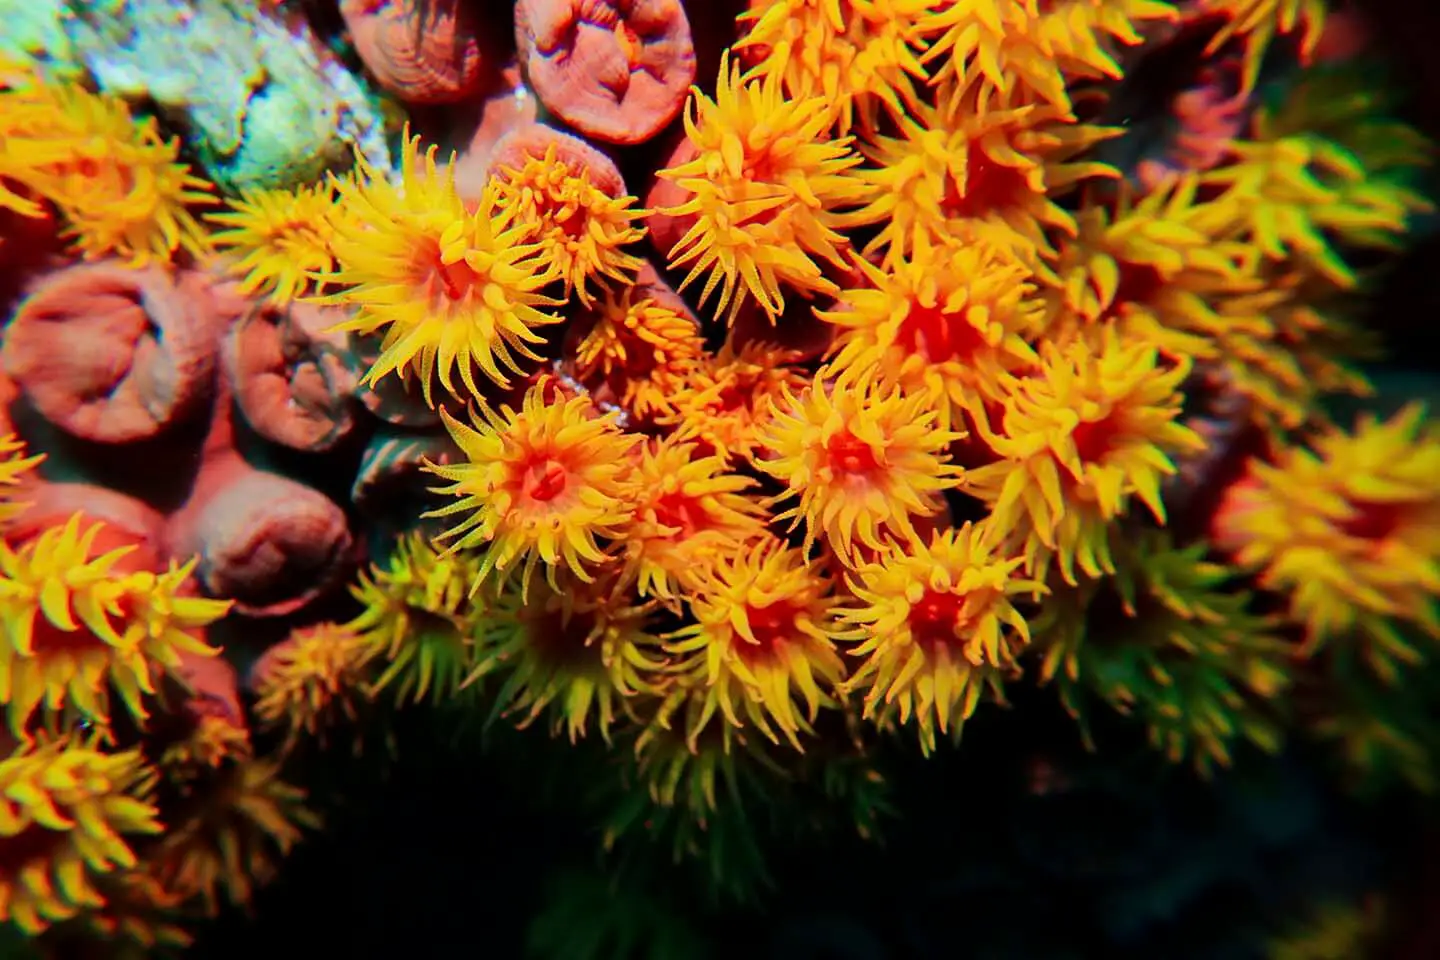 Orange sun cup tubastrea corals  spotted while diving in Pescador island